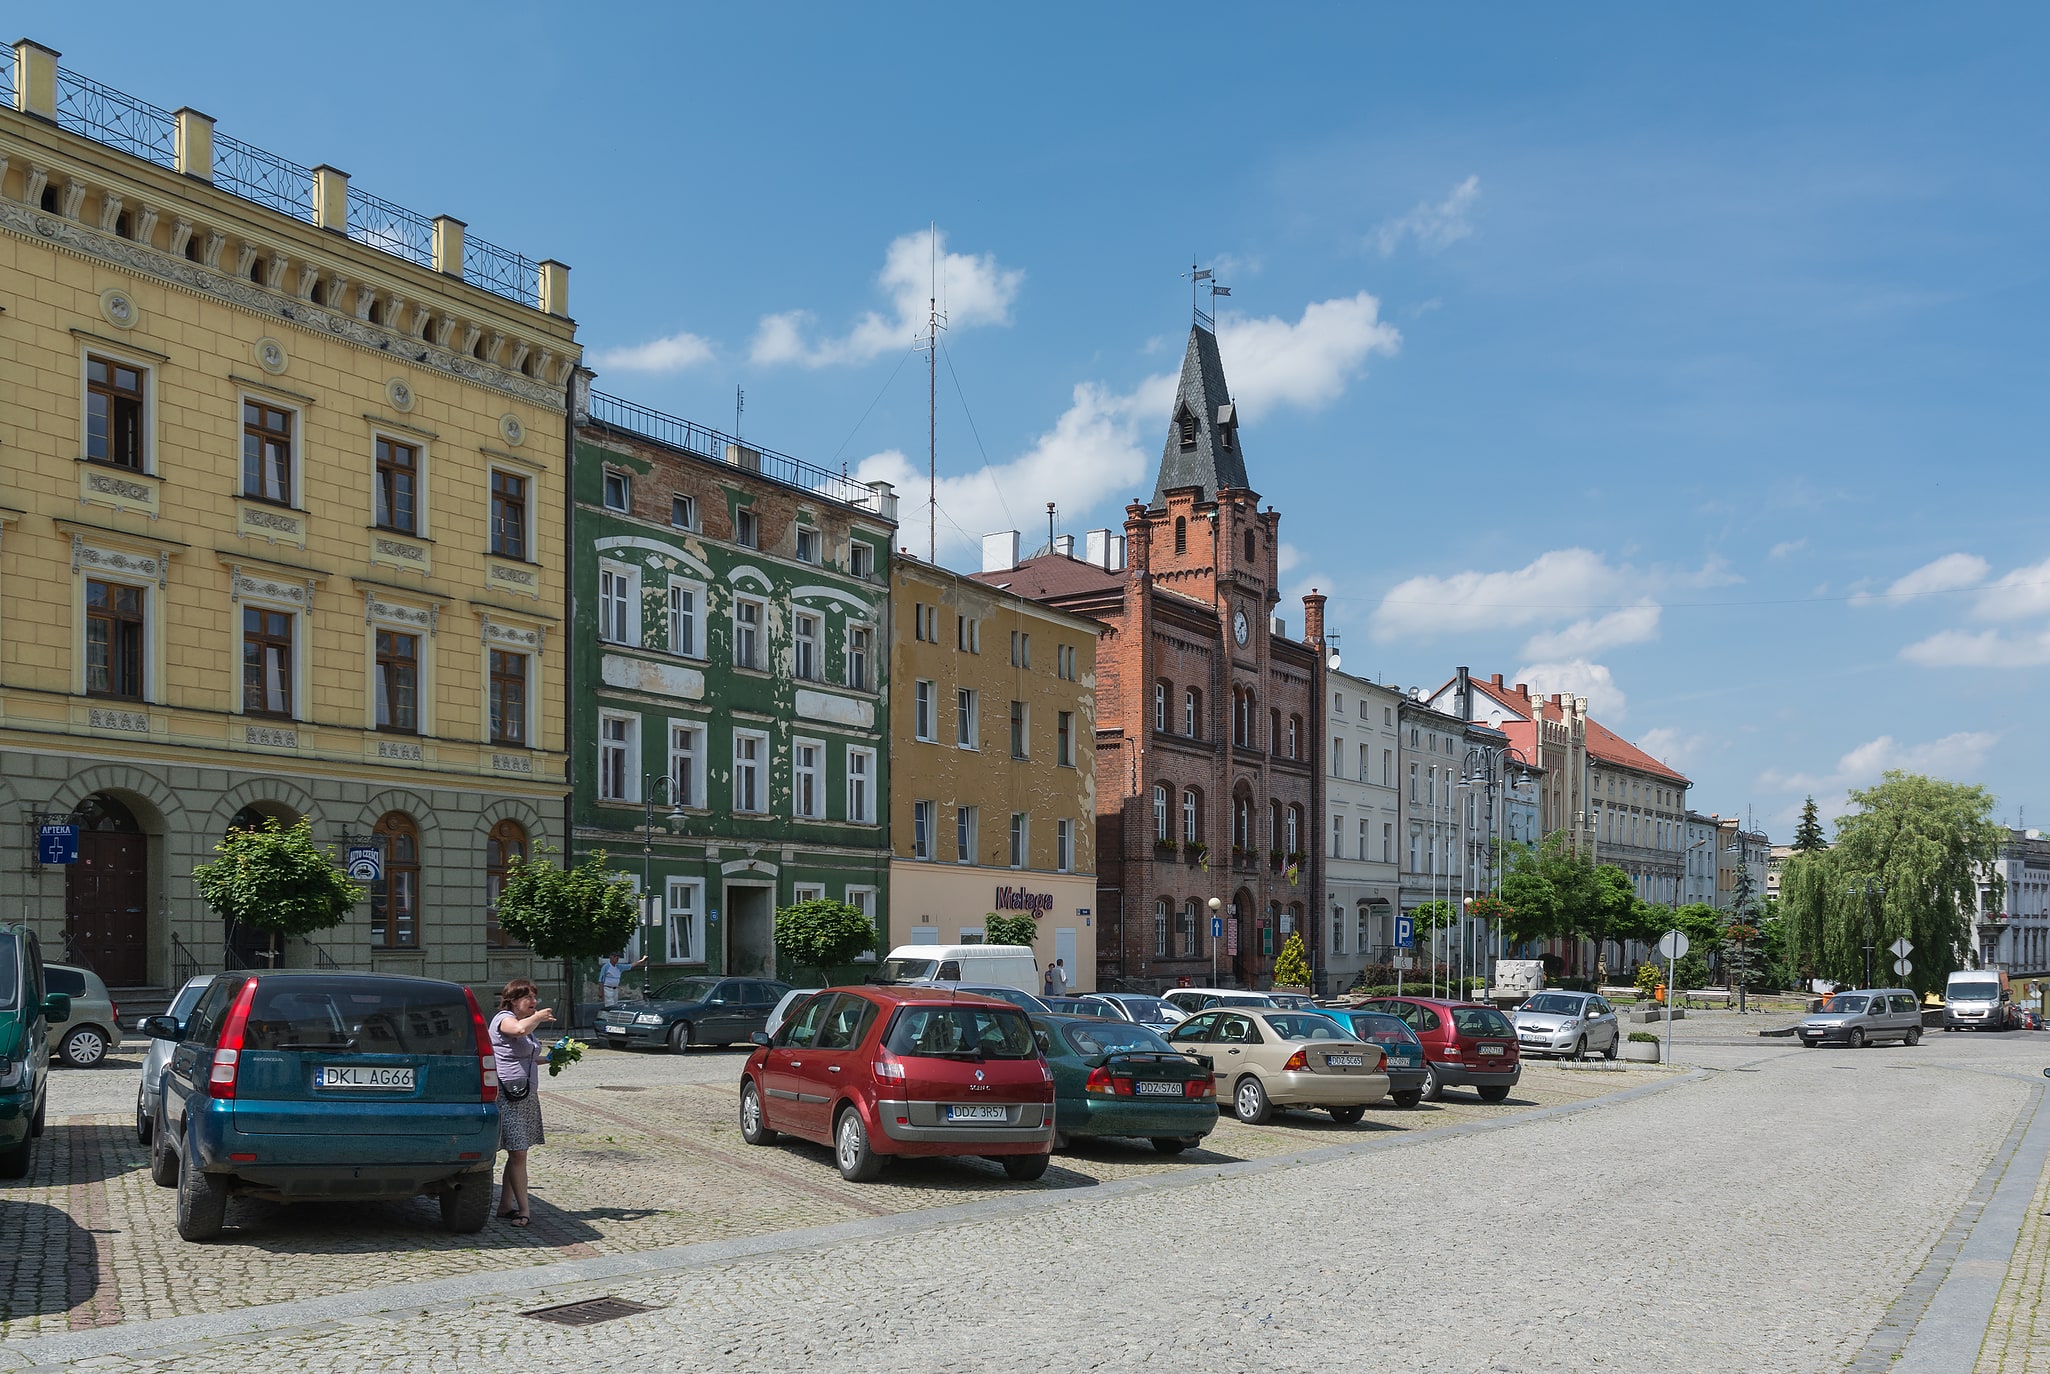 Niemcza, Poland